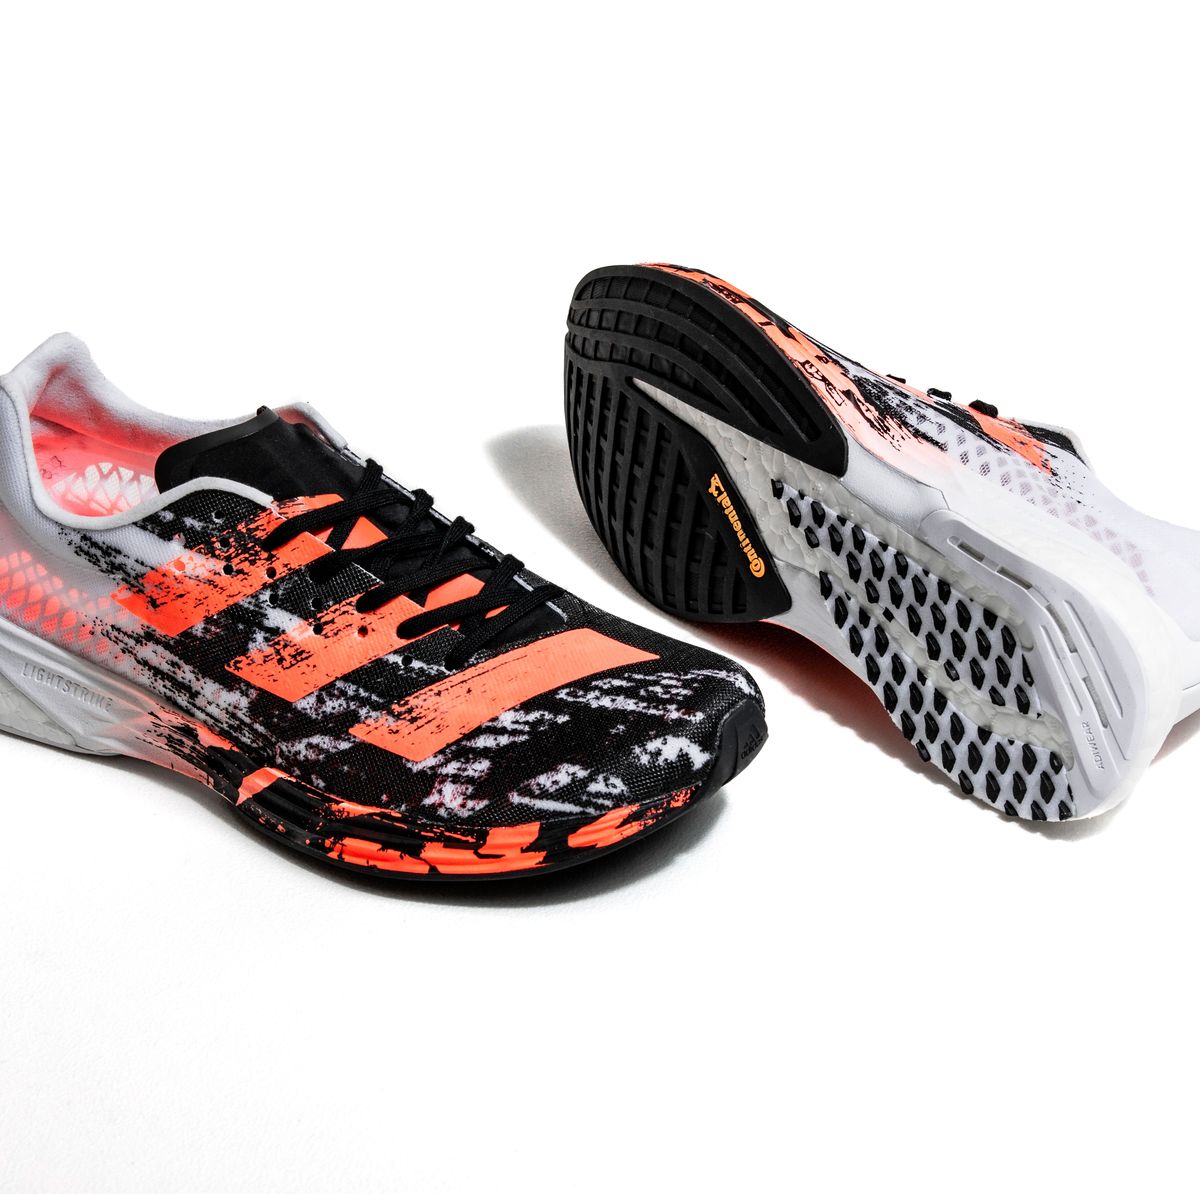 Adizero - Probamos zapatillas running más de Adidas